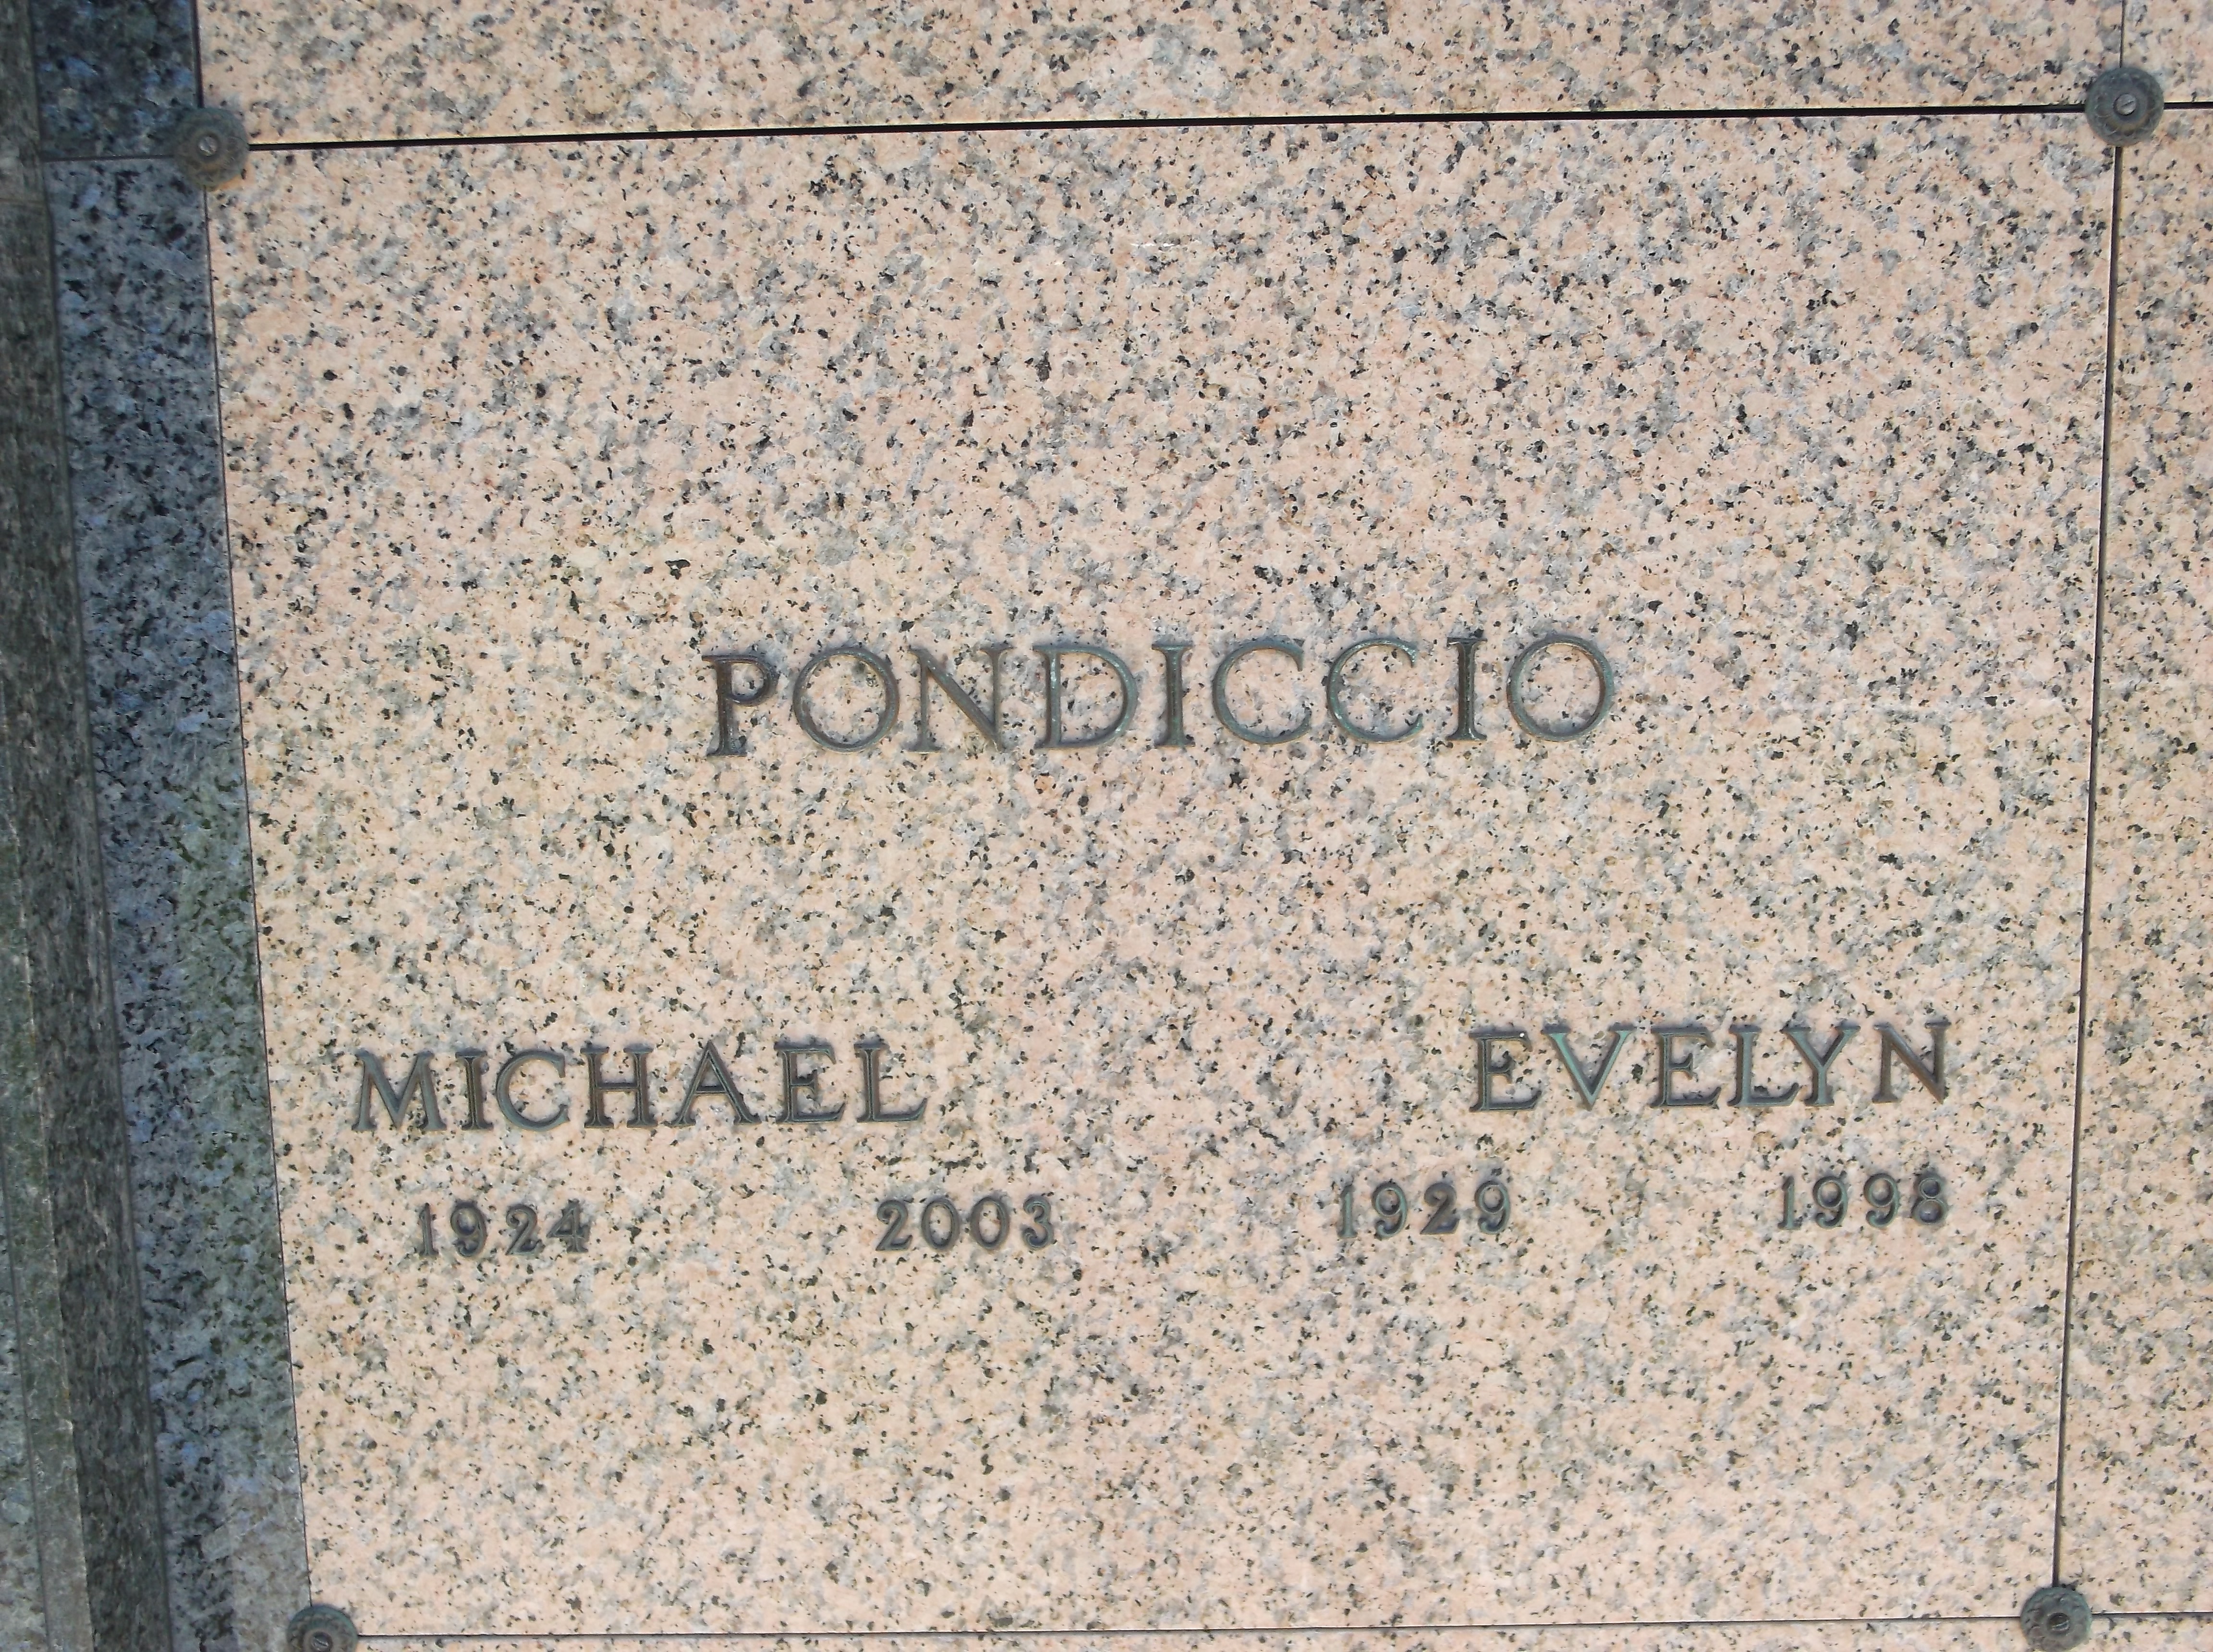 Michael Pondiccio